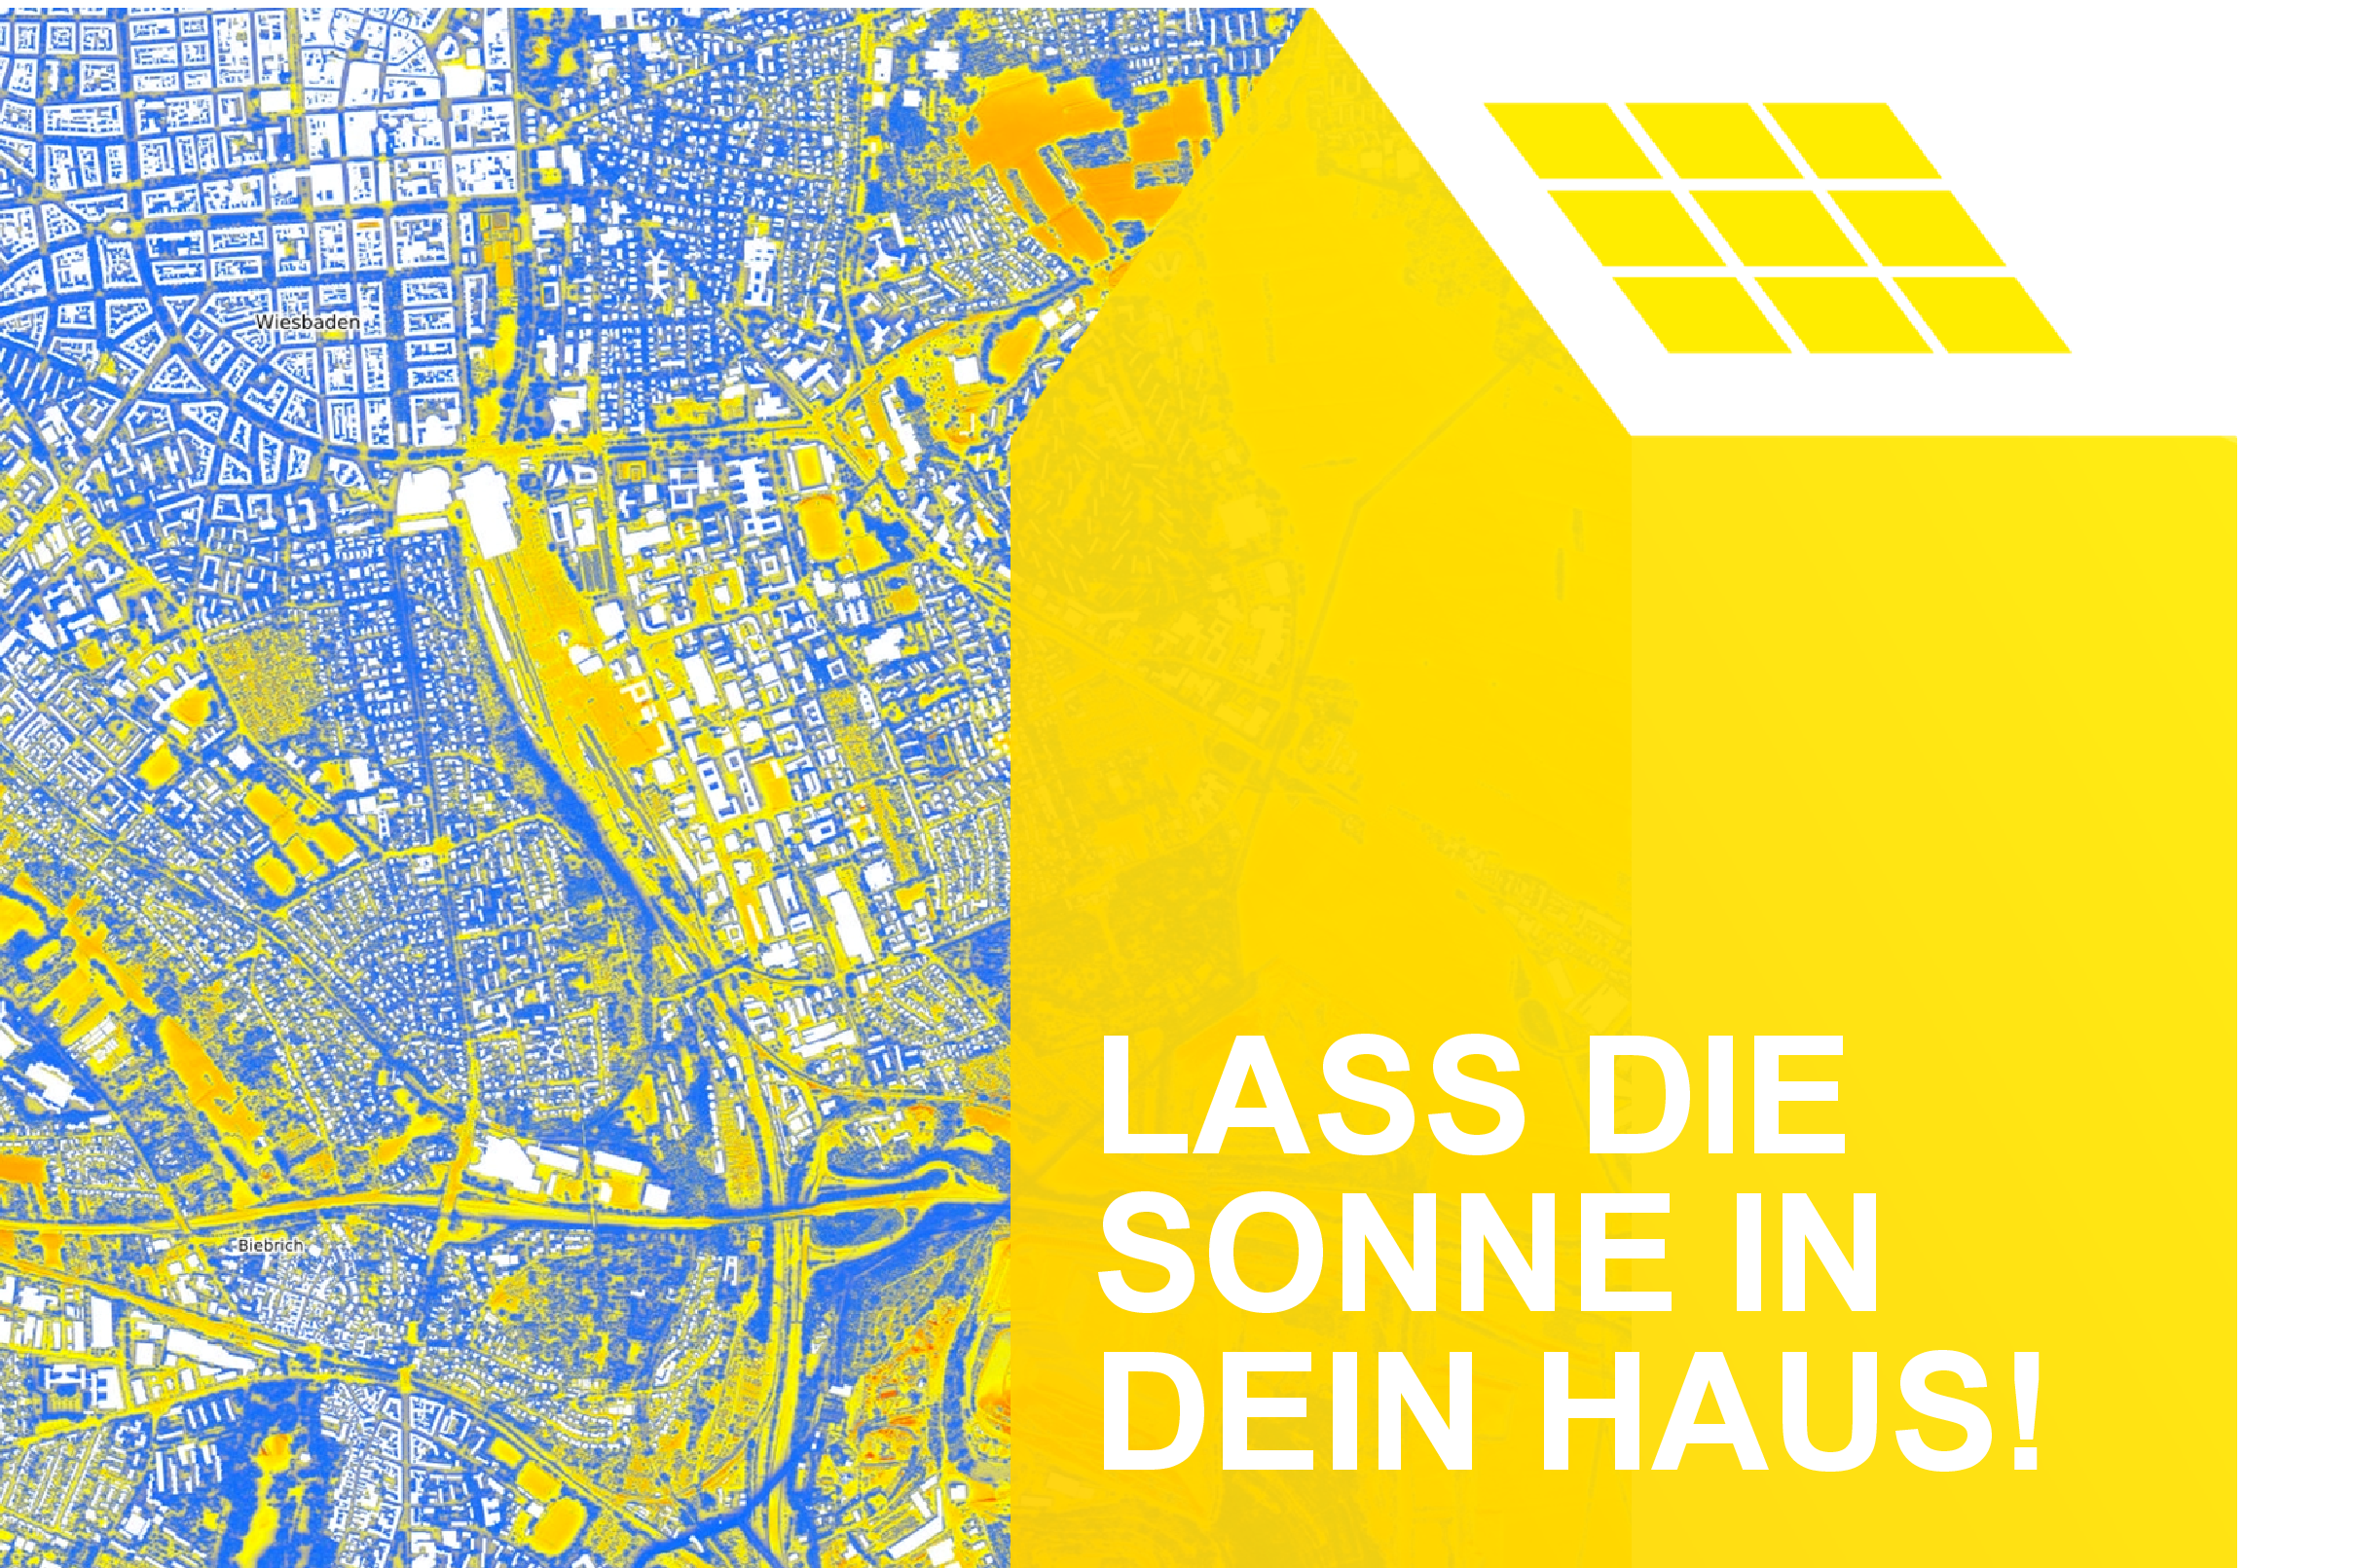 Luftbild des Solarkataster Hessen, Potenzial für Solaranlage auf Hausdächern wird dargestellt